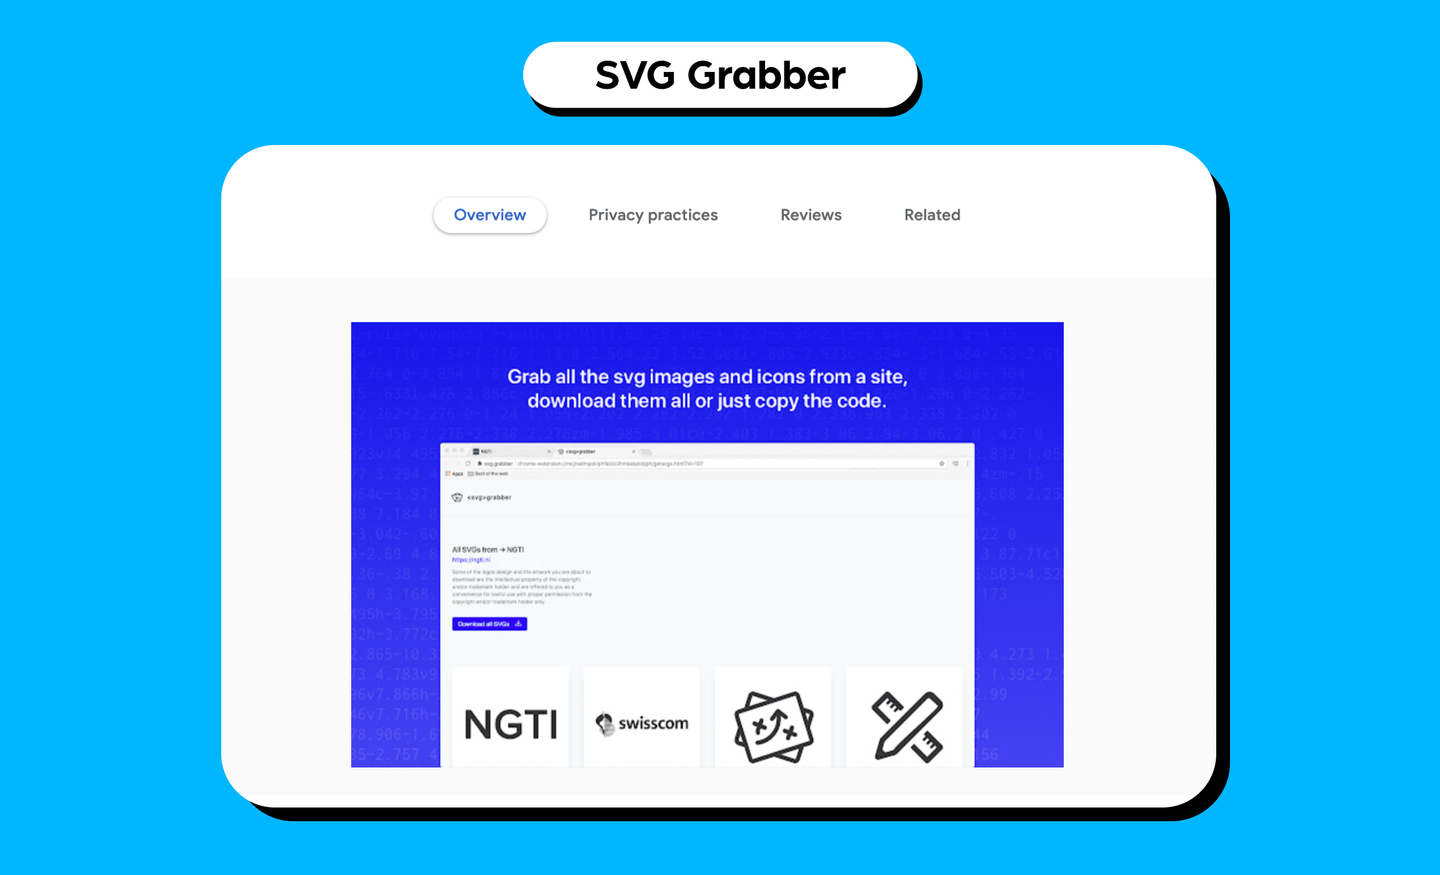 SVG Grabber